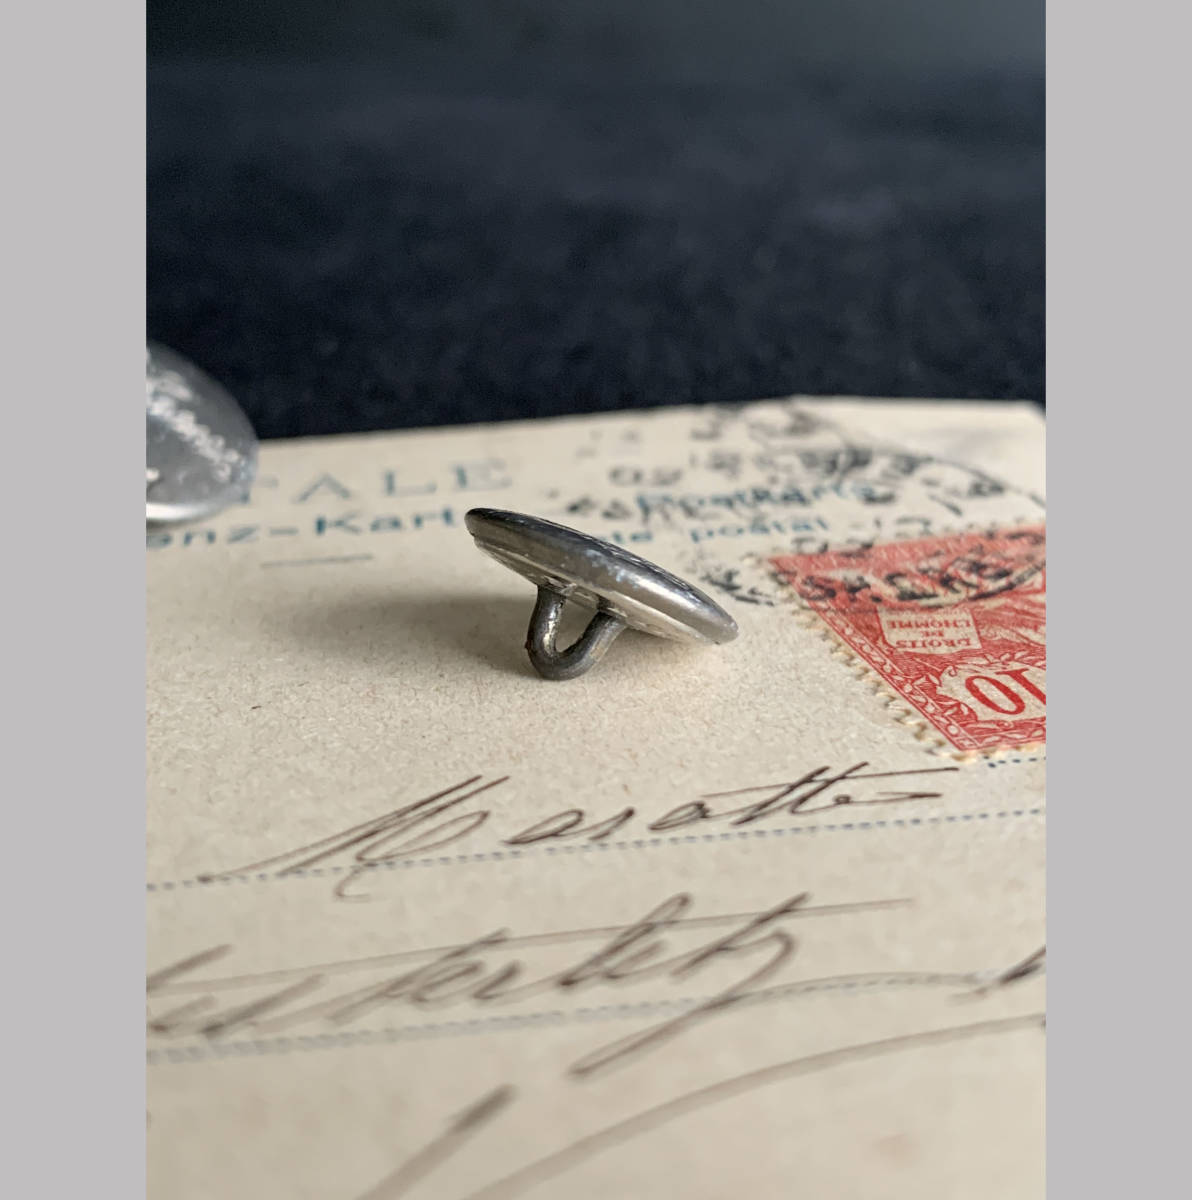 フランス パリ 1900-40s ホワイト メタル ボタン φ14mm 欧州 古着 ハンティング ジャケット 刺繍 裁縫 ヴィンテージ アンティーク 4_画像2